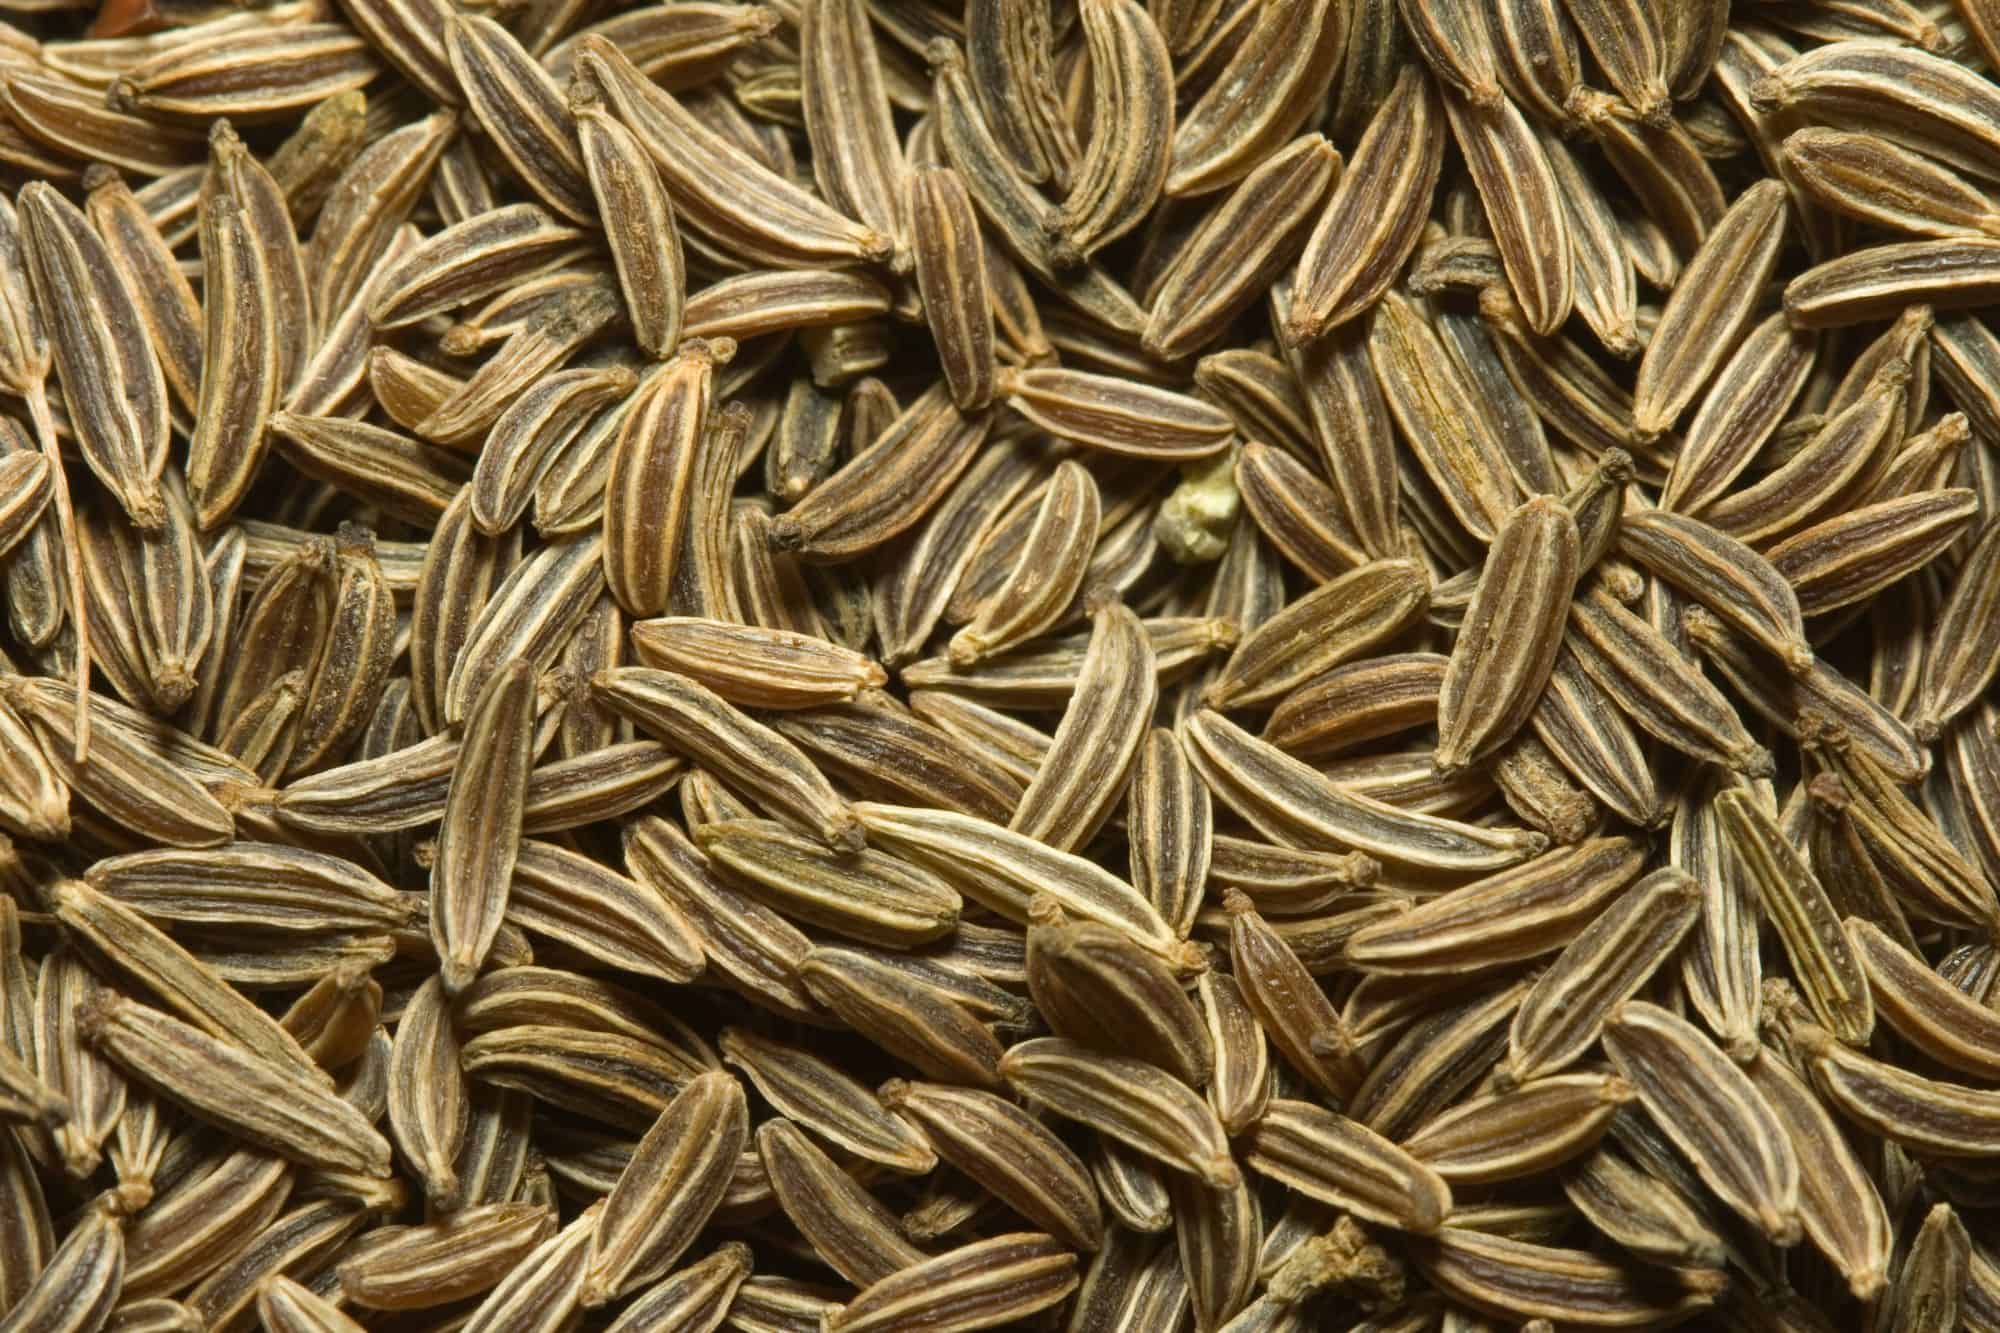 Caraway Seeds close up.